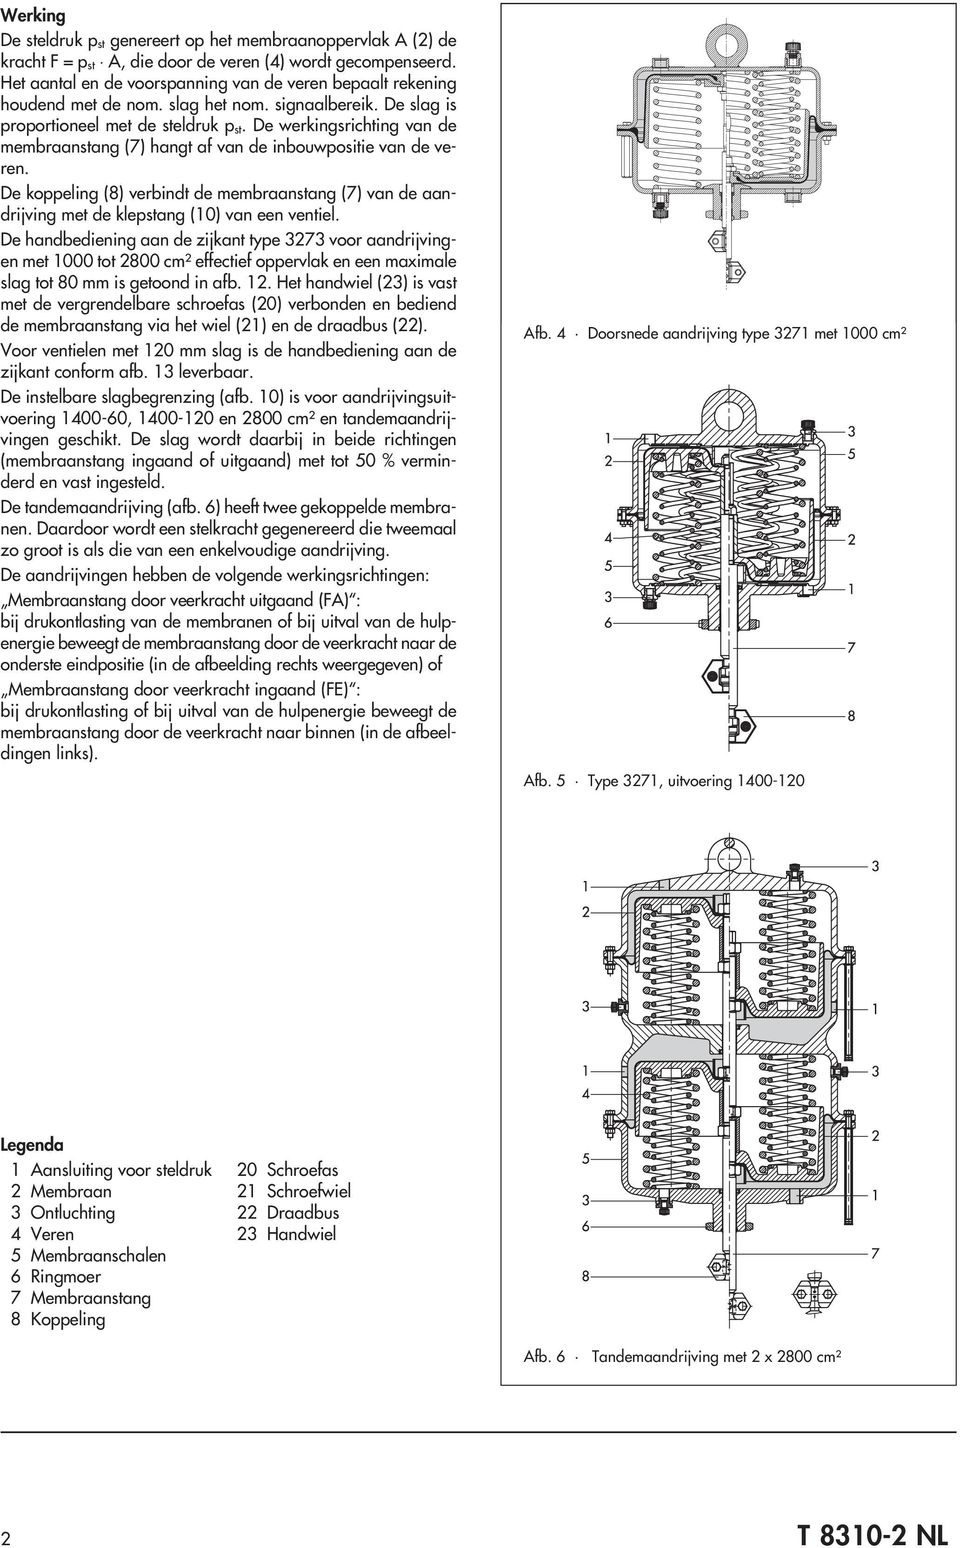 De werkingsrichting van de membraanstang (7) hangt af van de inbouwpositie van de veren. De koppeling (8) verbindt de membraanstang (7) van de aandrijving met de klepstang (10) van een ventiel.